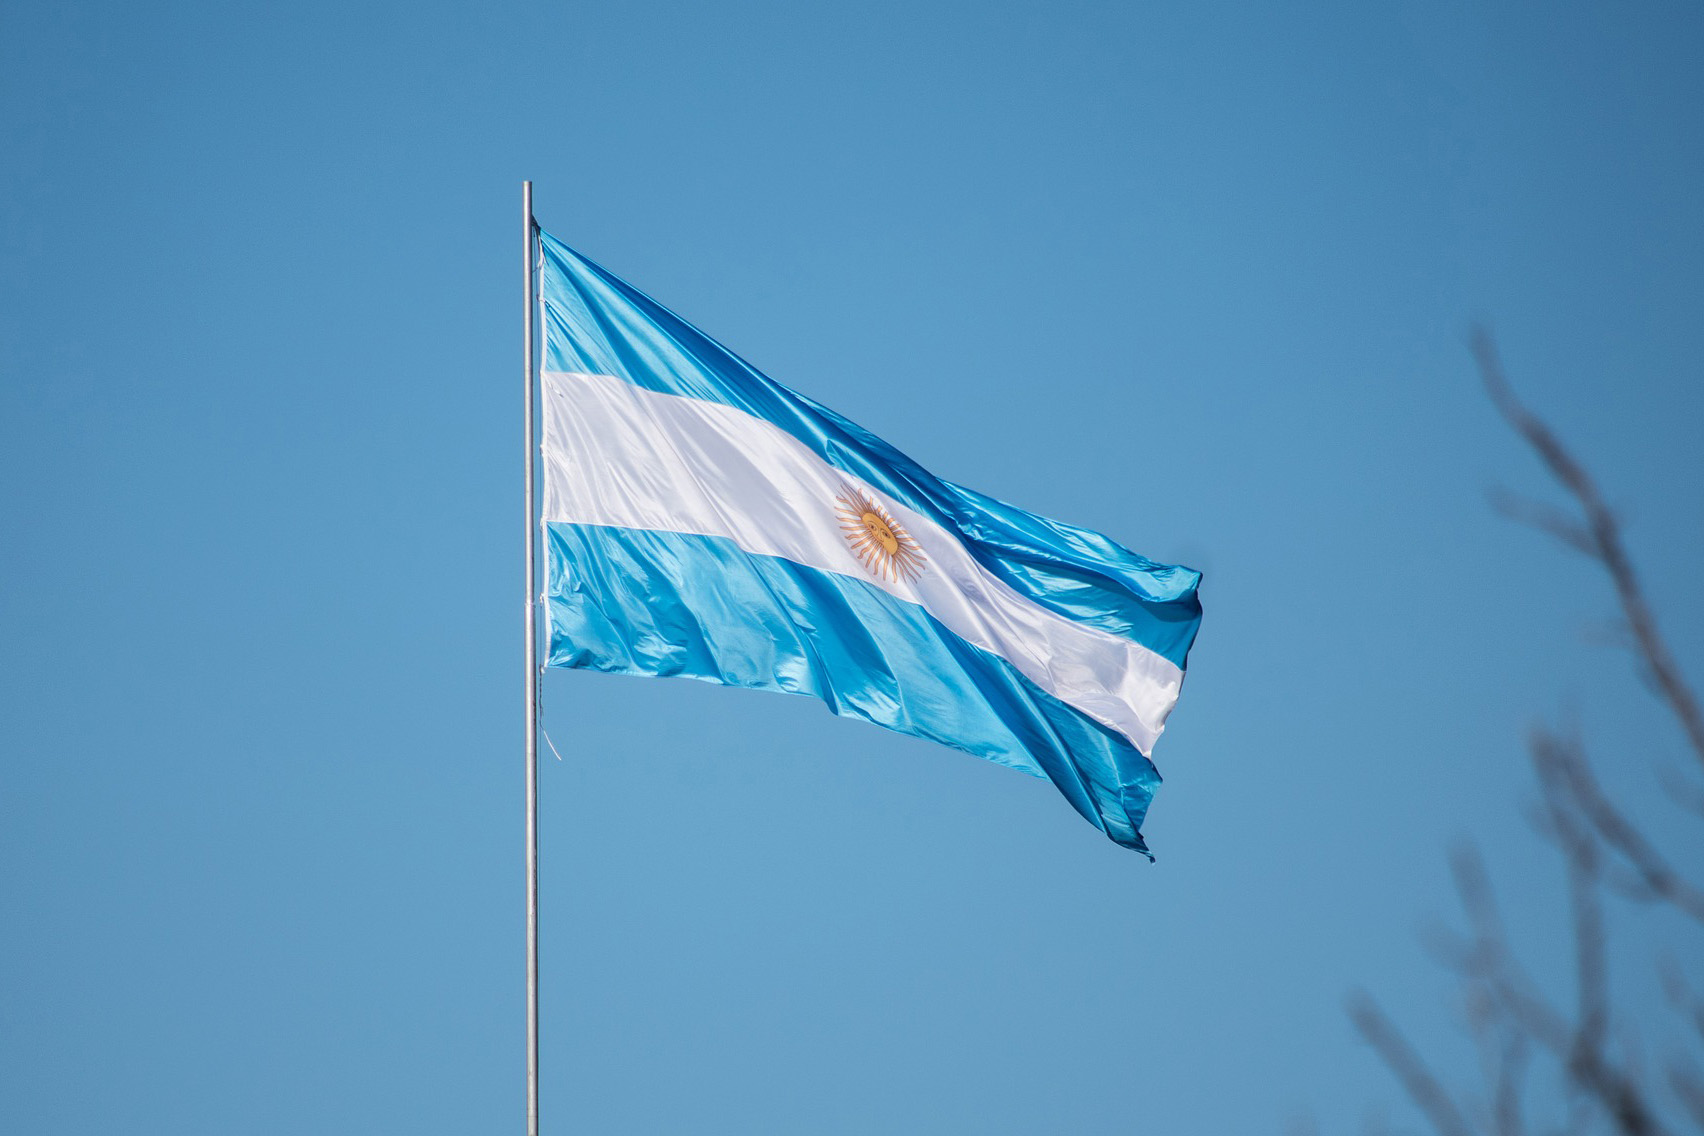 populacao-argentina-tem-dados-de-identidade-a-venda-na-darknet